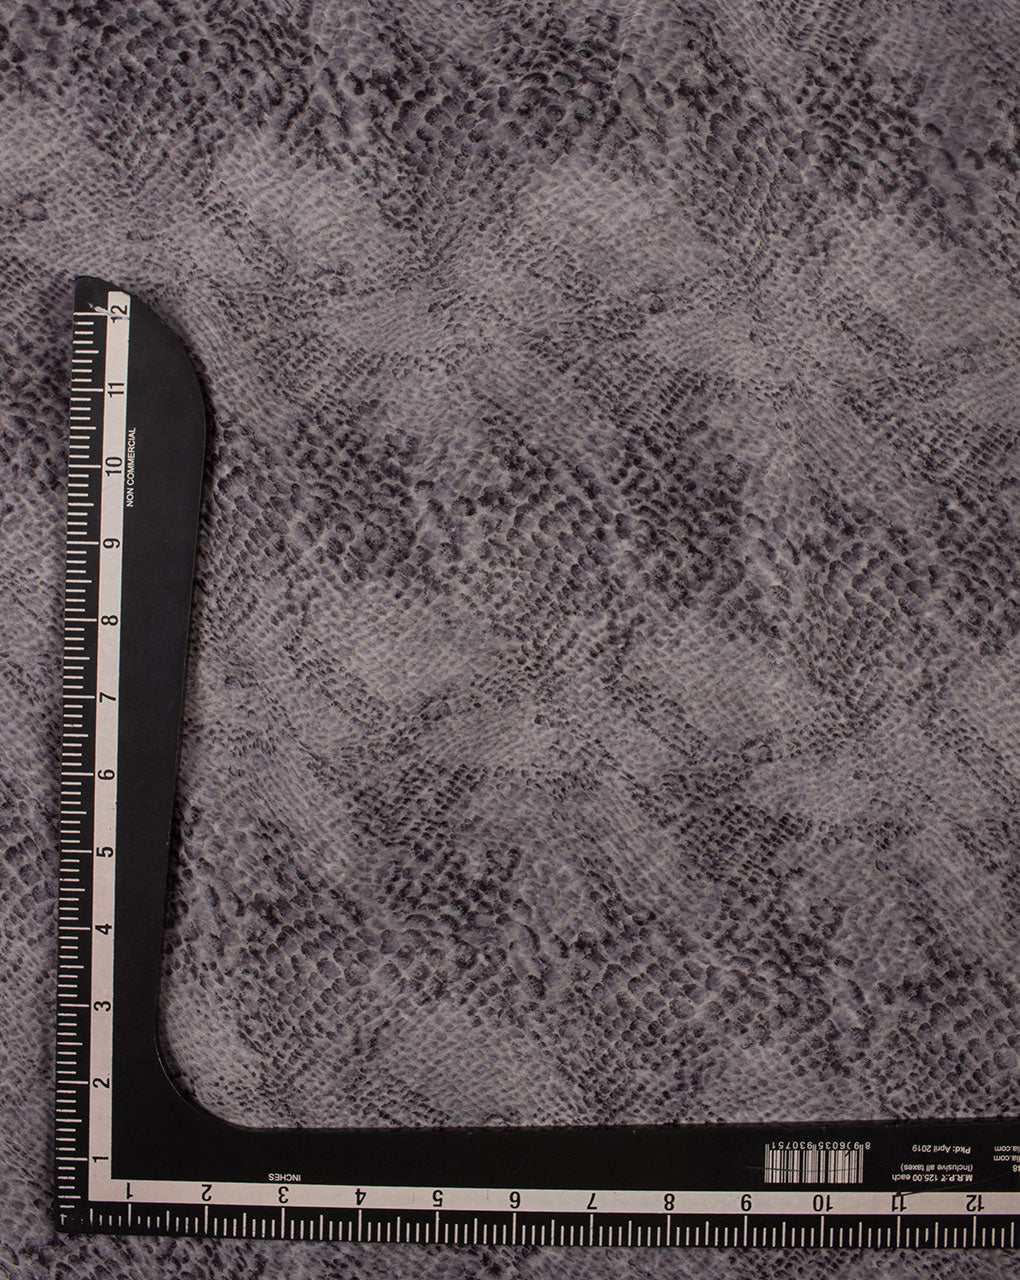 Grey Screen Print Chiffon Fabric - Fabriclore.com